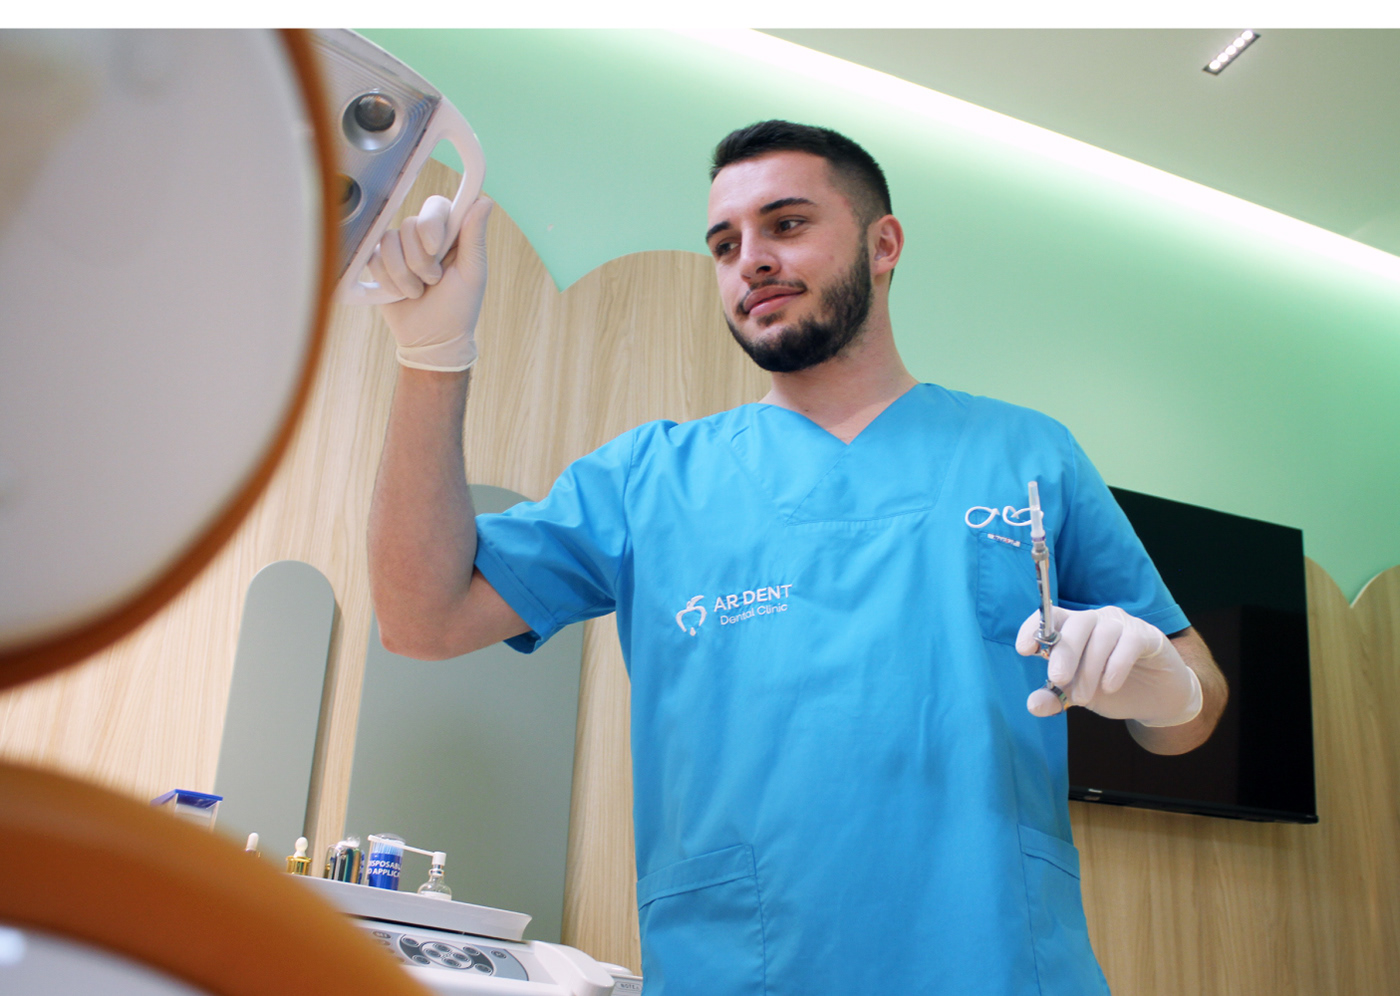 agi haxhimurati ar dent ardian clinic dental doctor kosova kosovo kozhani prishtina